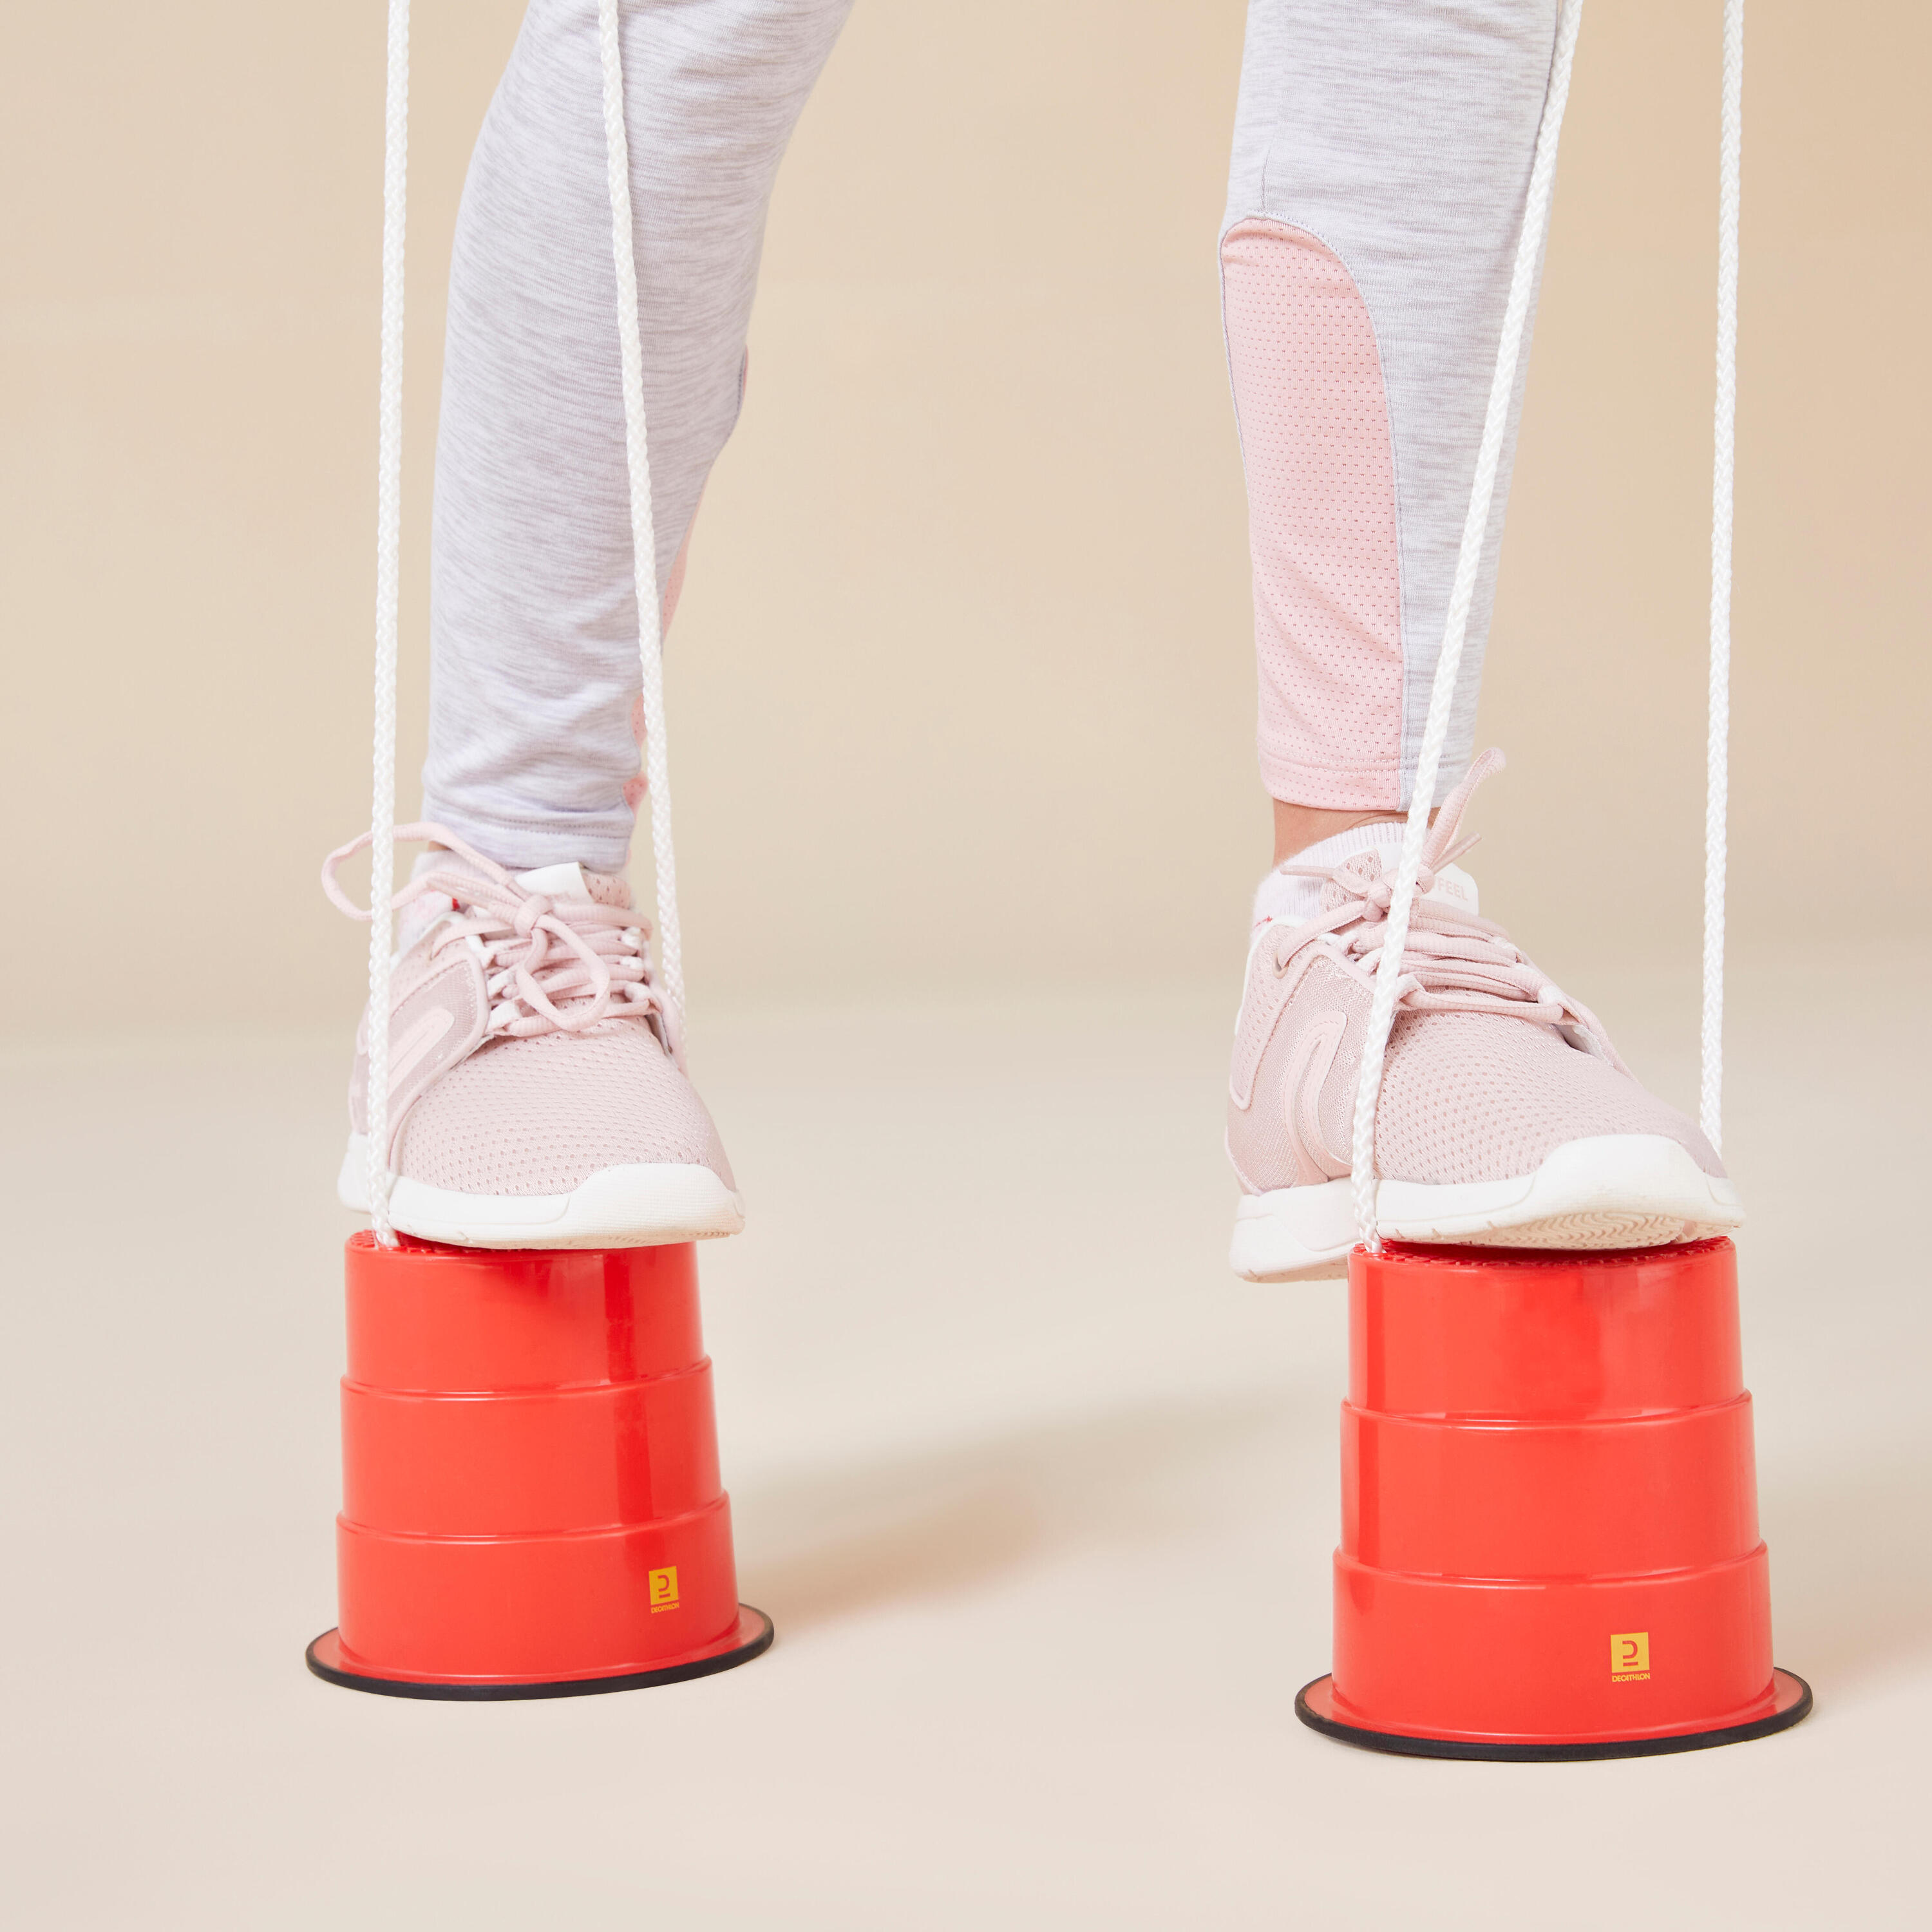 Kids' Bucket Stilts with Non-Slip Pads 3/7